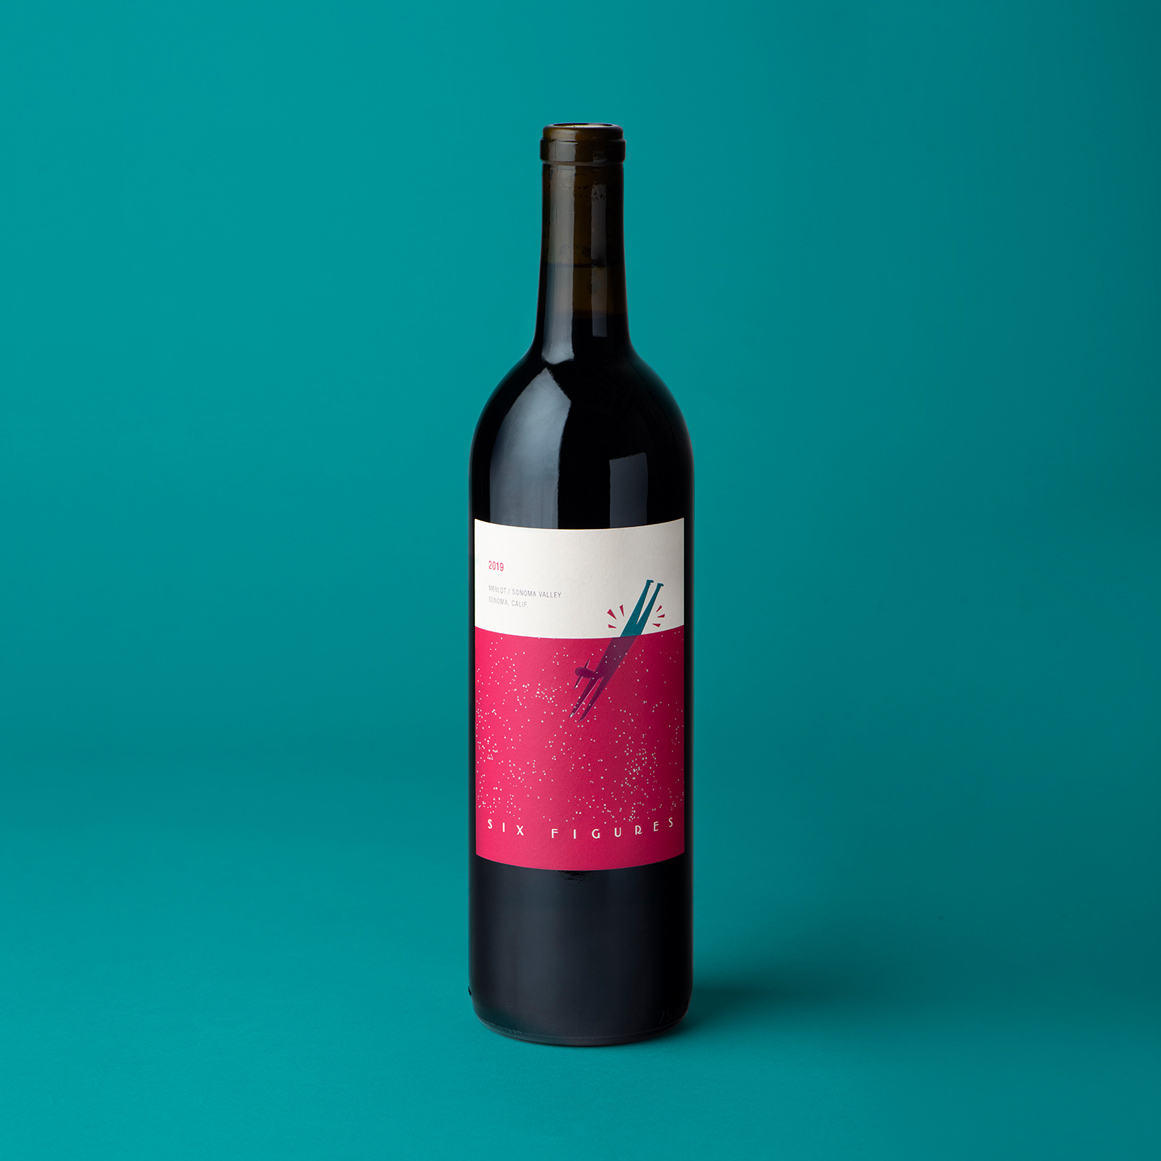 A bottle of Six Figures 2019 Merlot wine.